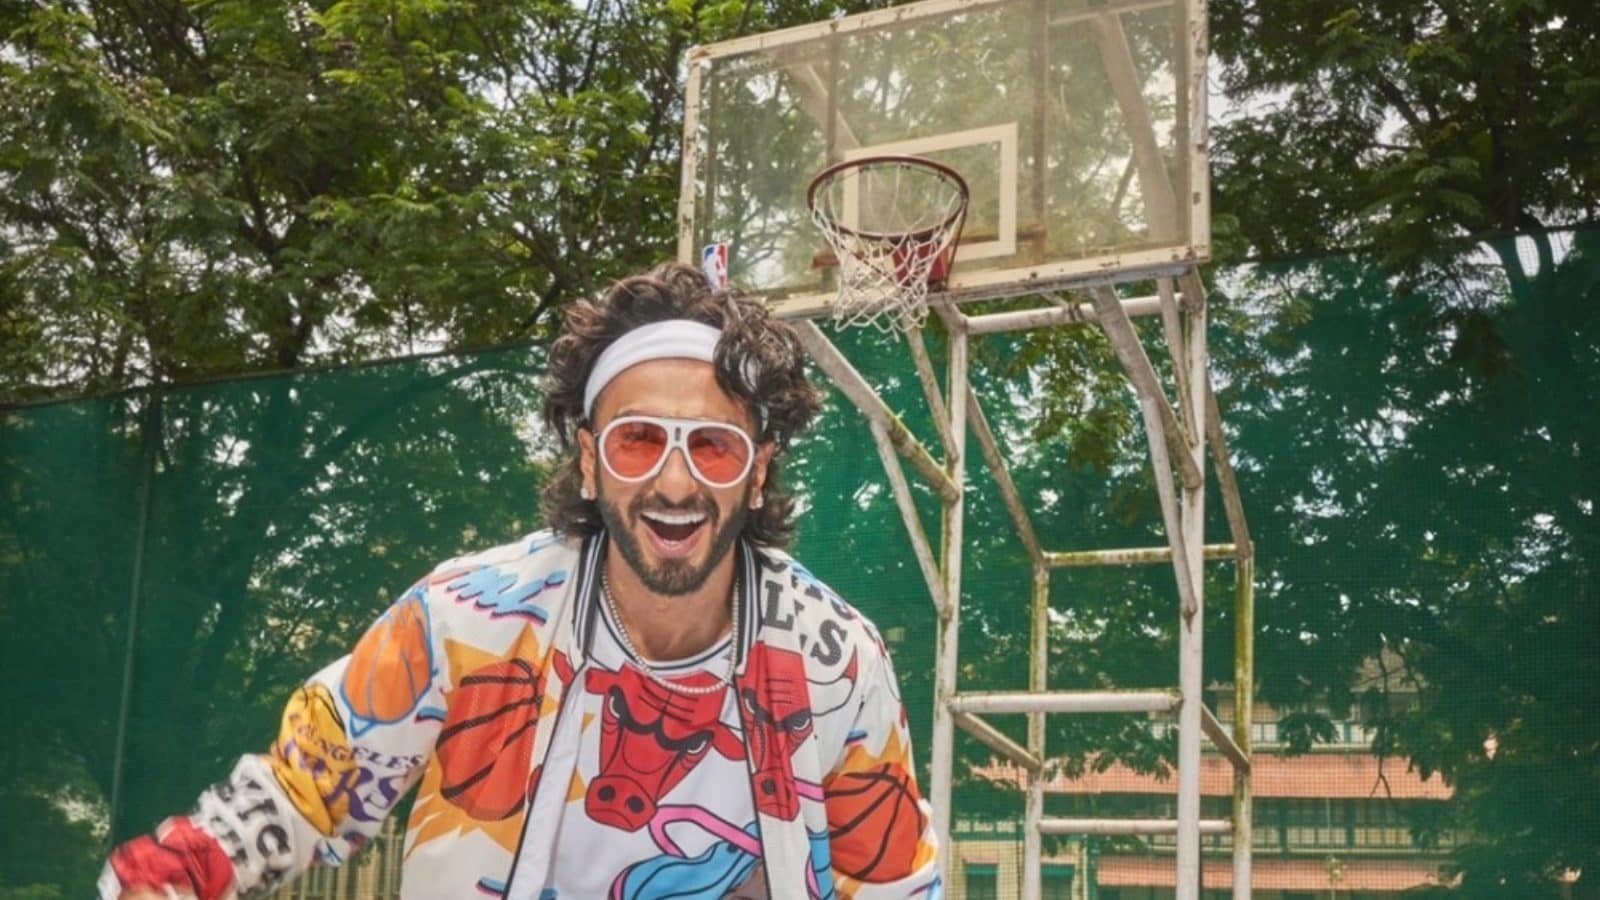 NBA signs Bollywood star Ranveer Singh as brand ambassador in India